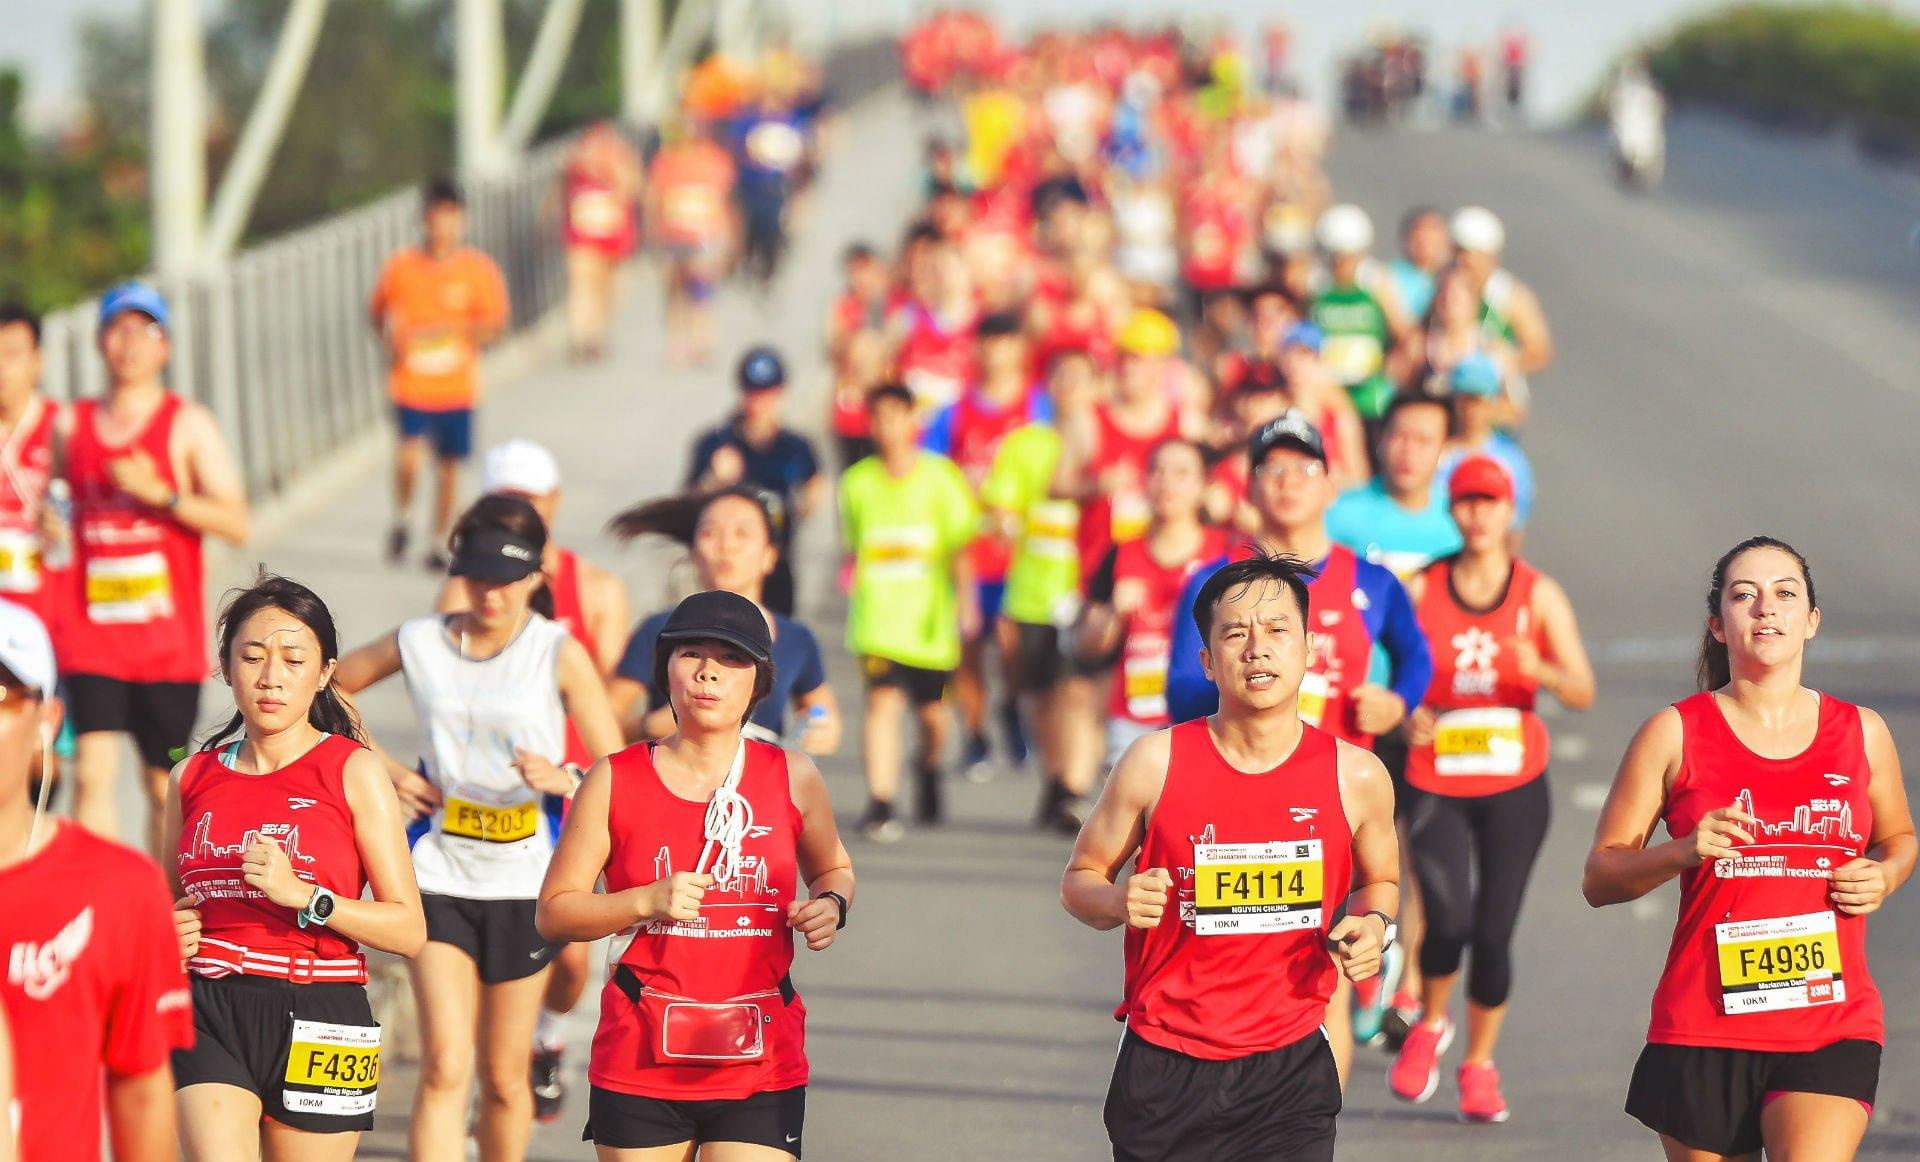   Chạy marathon có thể giảm huyết áp và giảm nguy cơ đột quỵ  